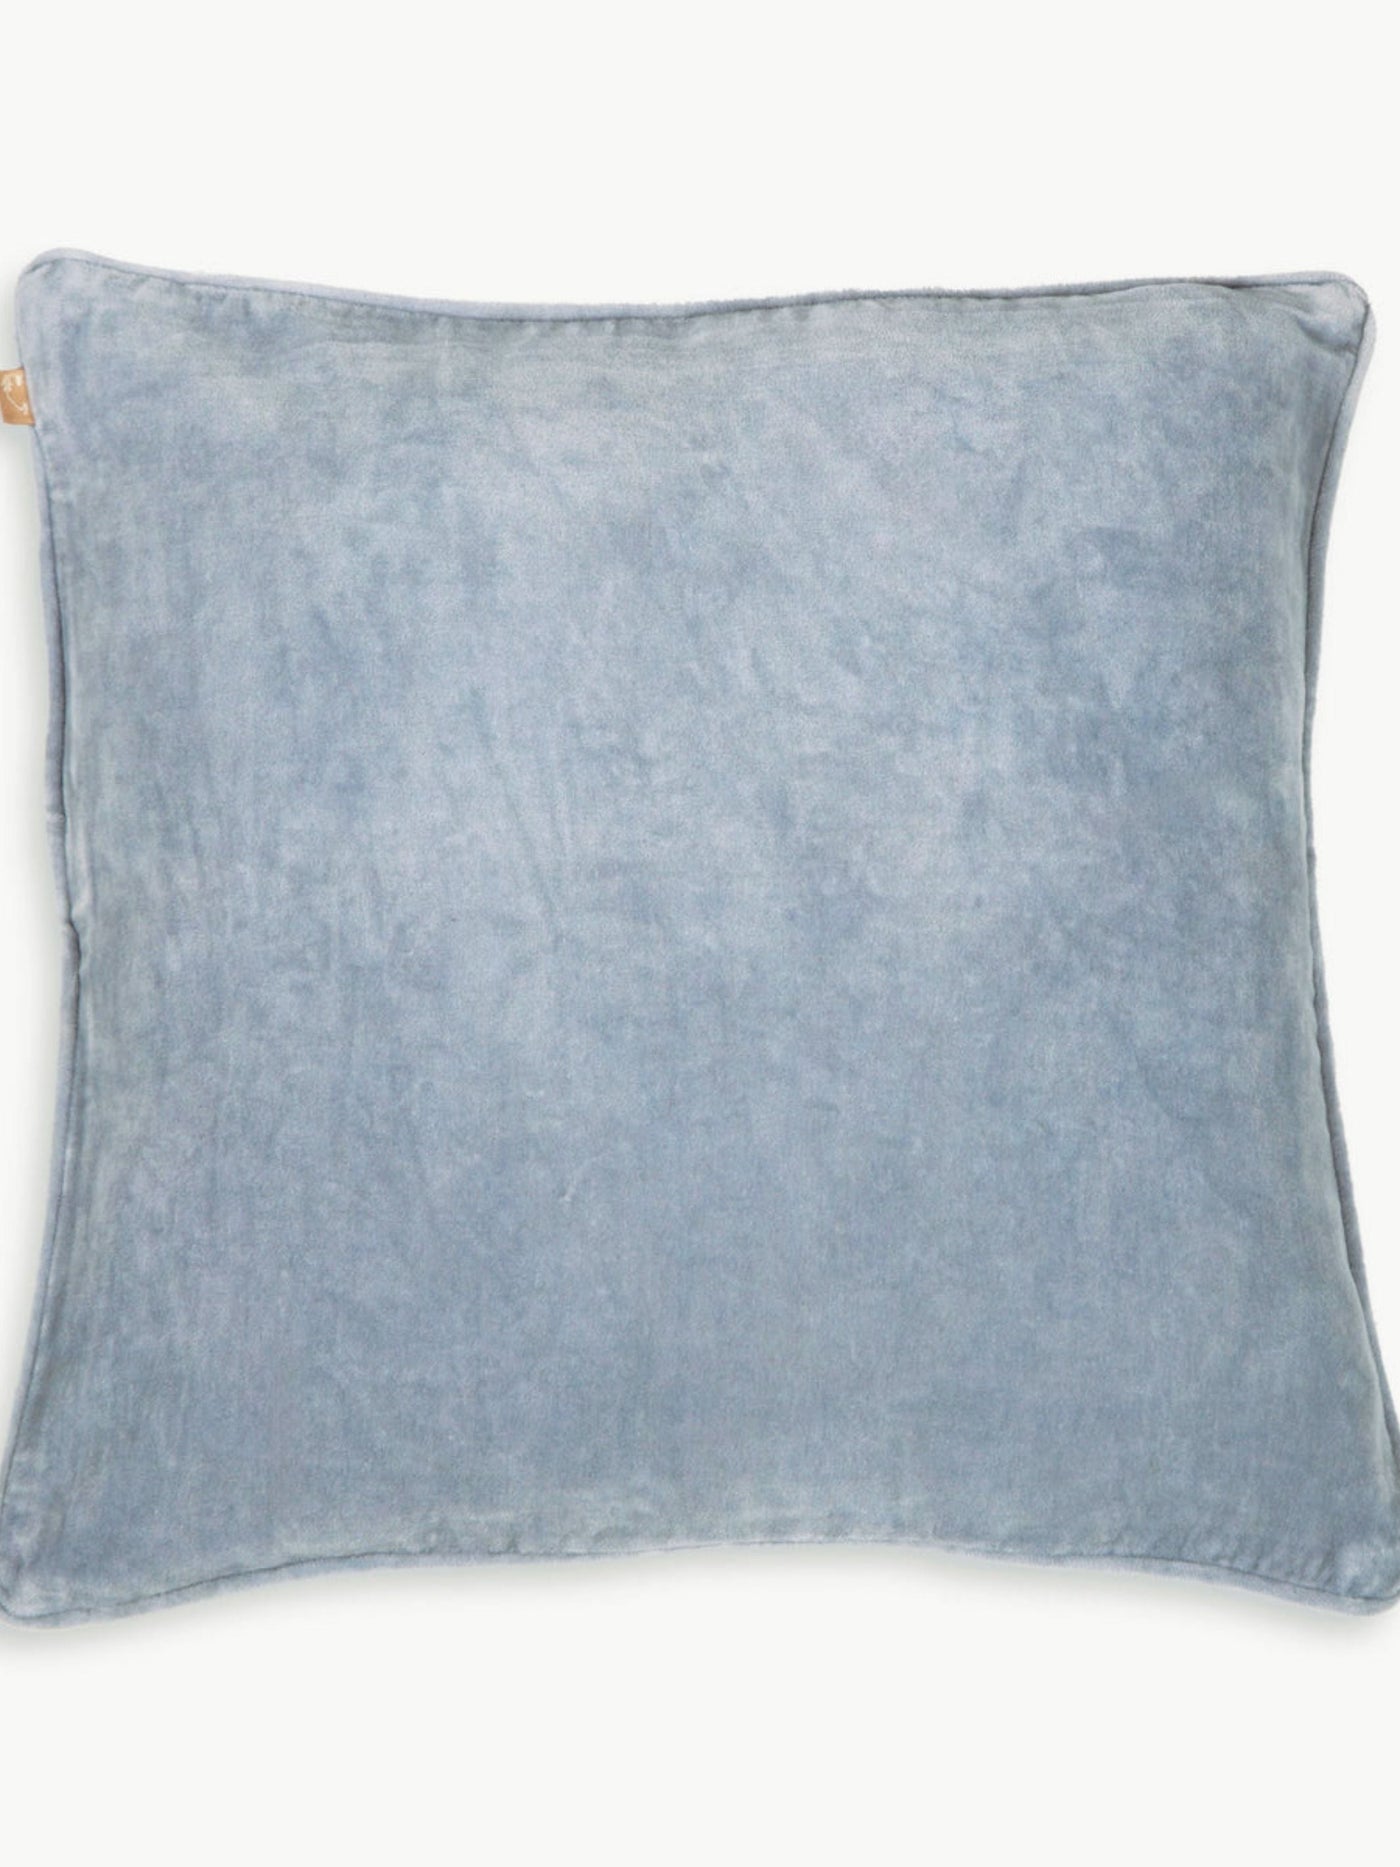 Cushion Cover - Baby Blue Velvet Euro Sham